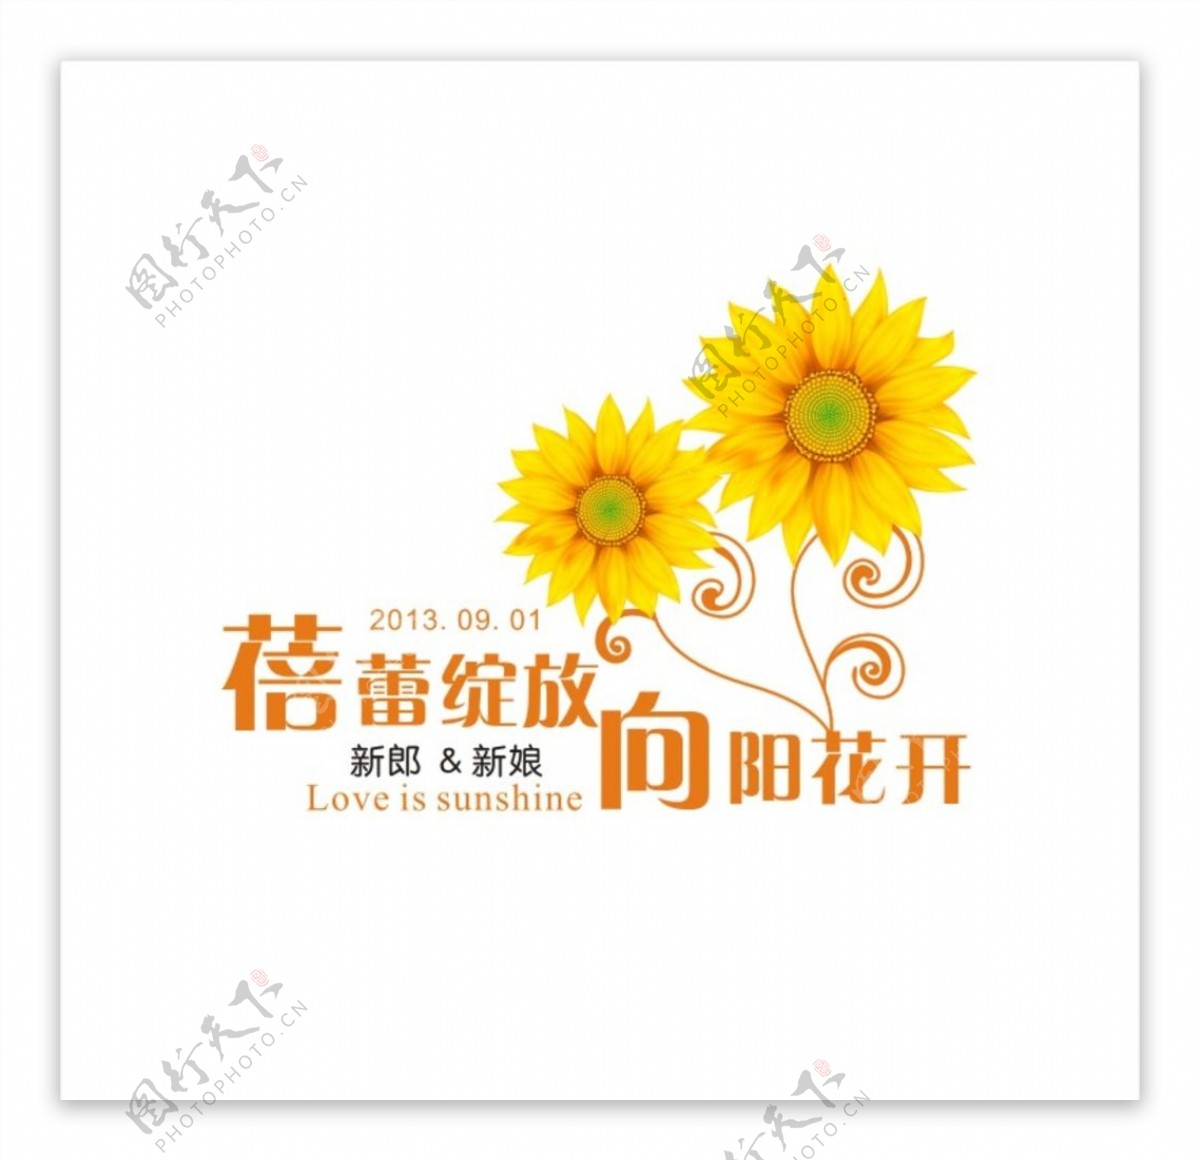 主题婚礼logo